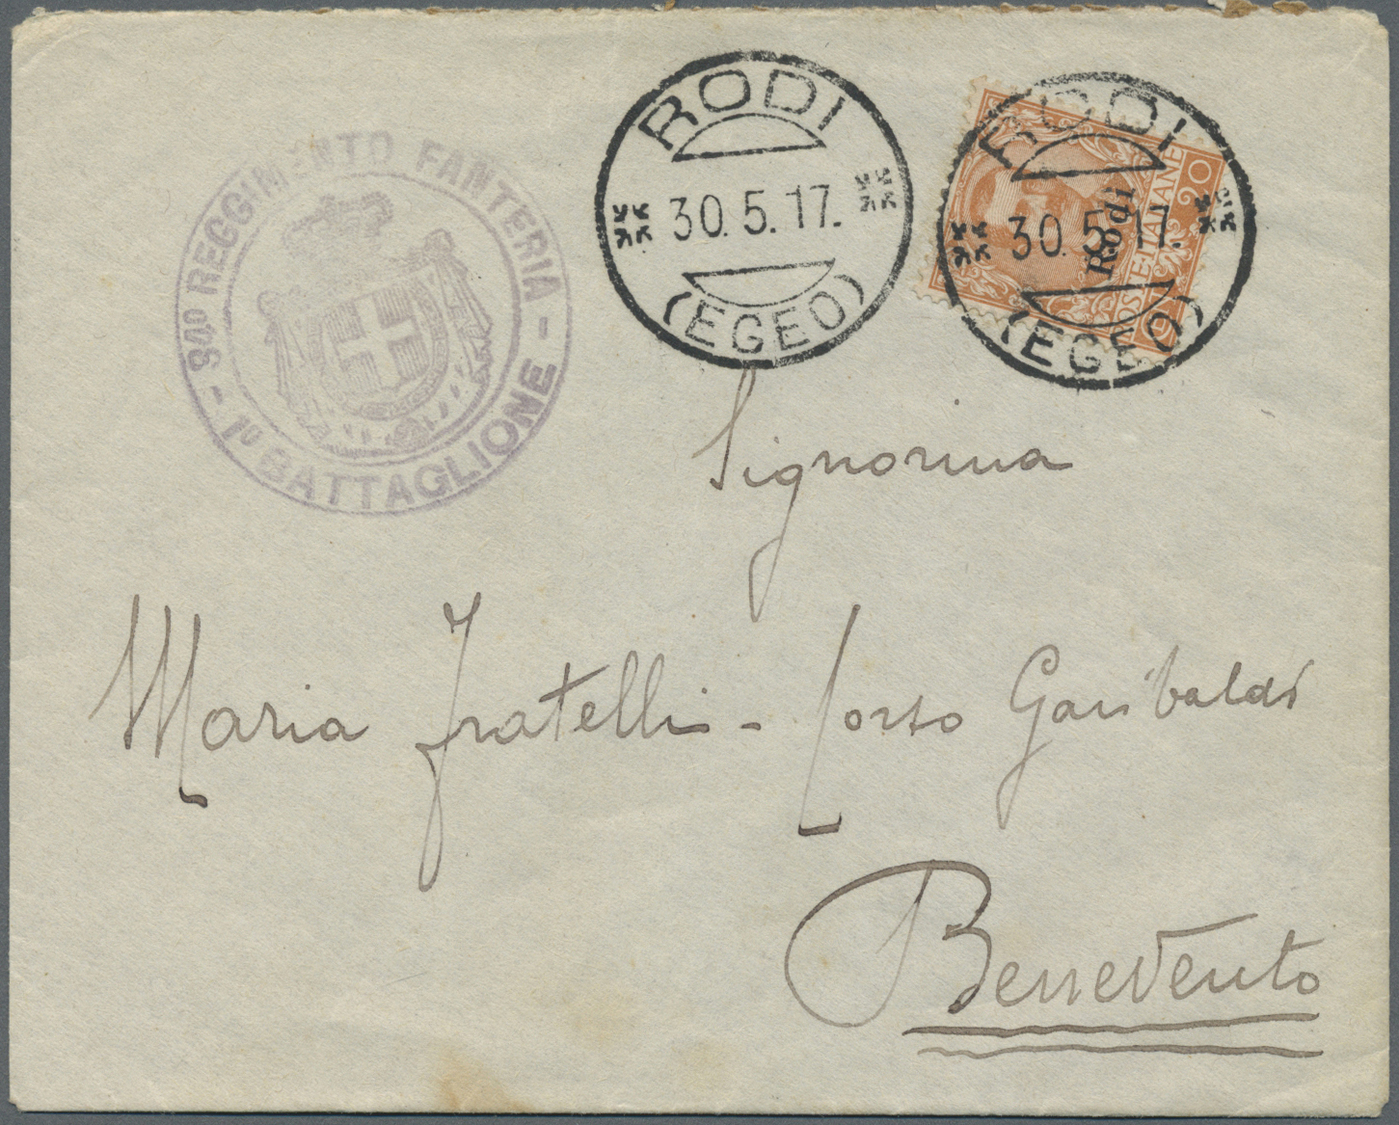 Br Ägäische Inseln: 1917. Envelope Addressed To Ltaly Bearing Rhodes SG 11, 20c Orange Tied By Rodi (Egeo) Date S - Aegean